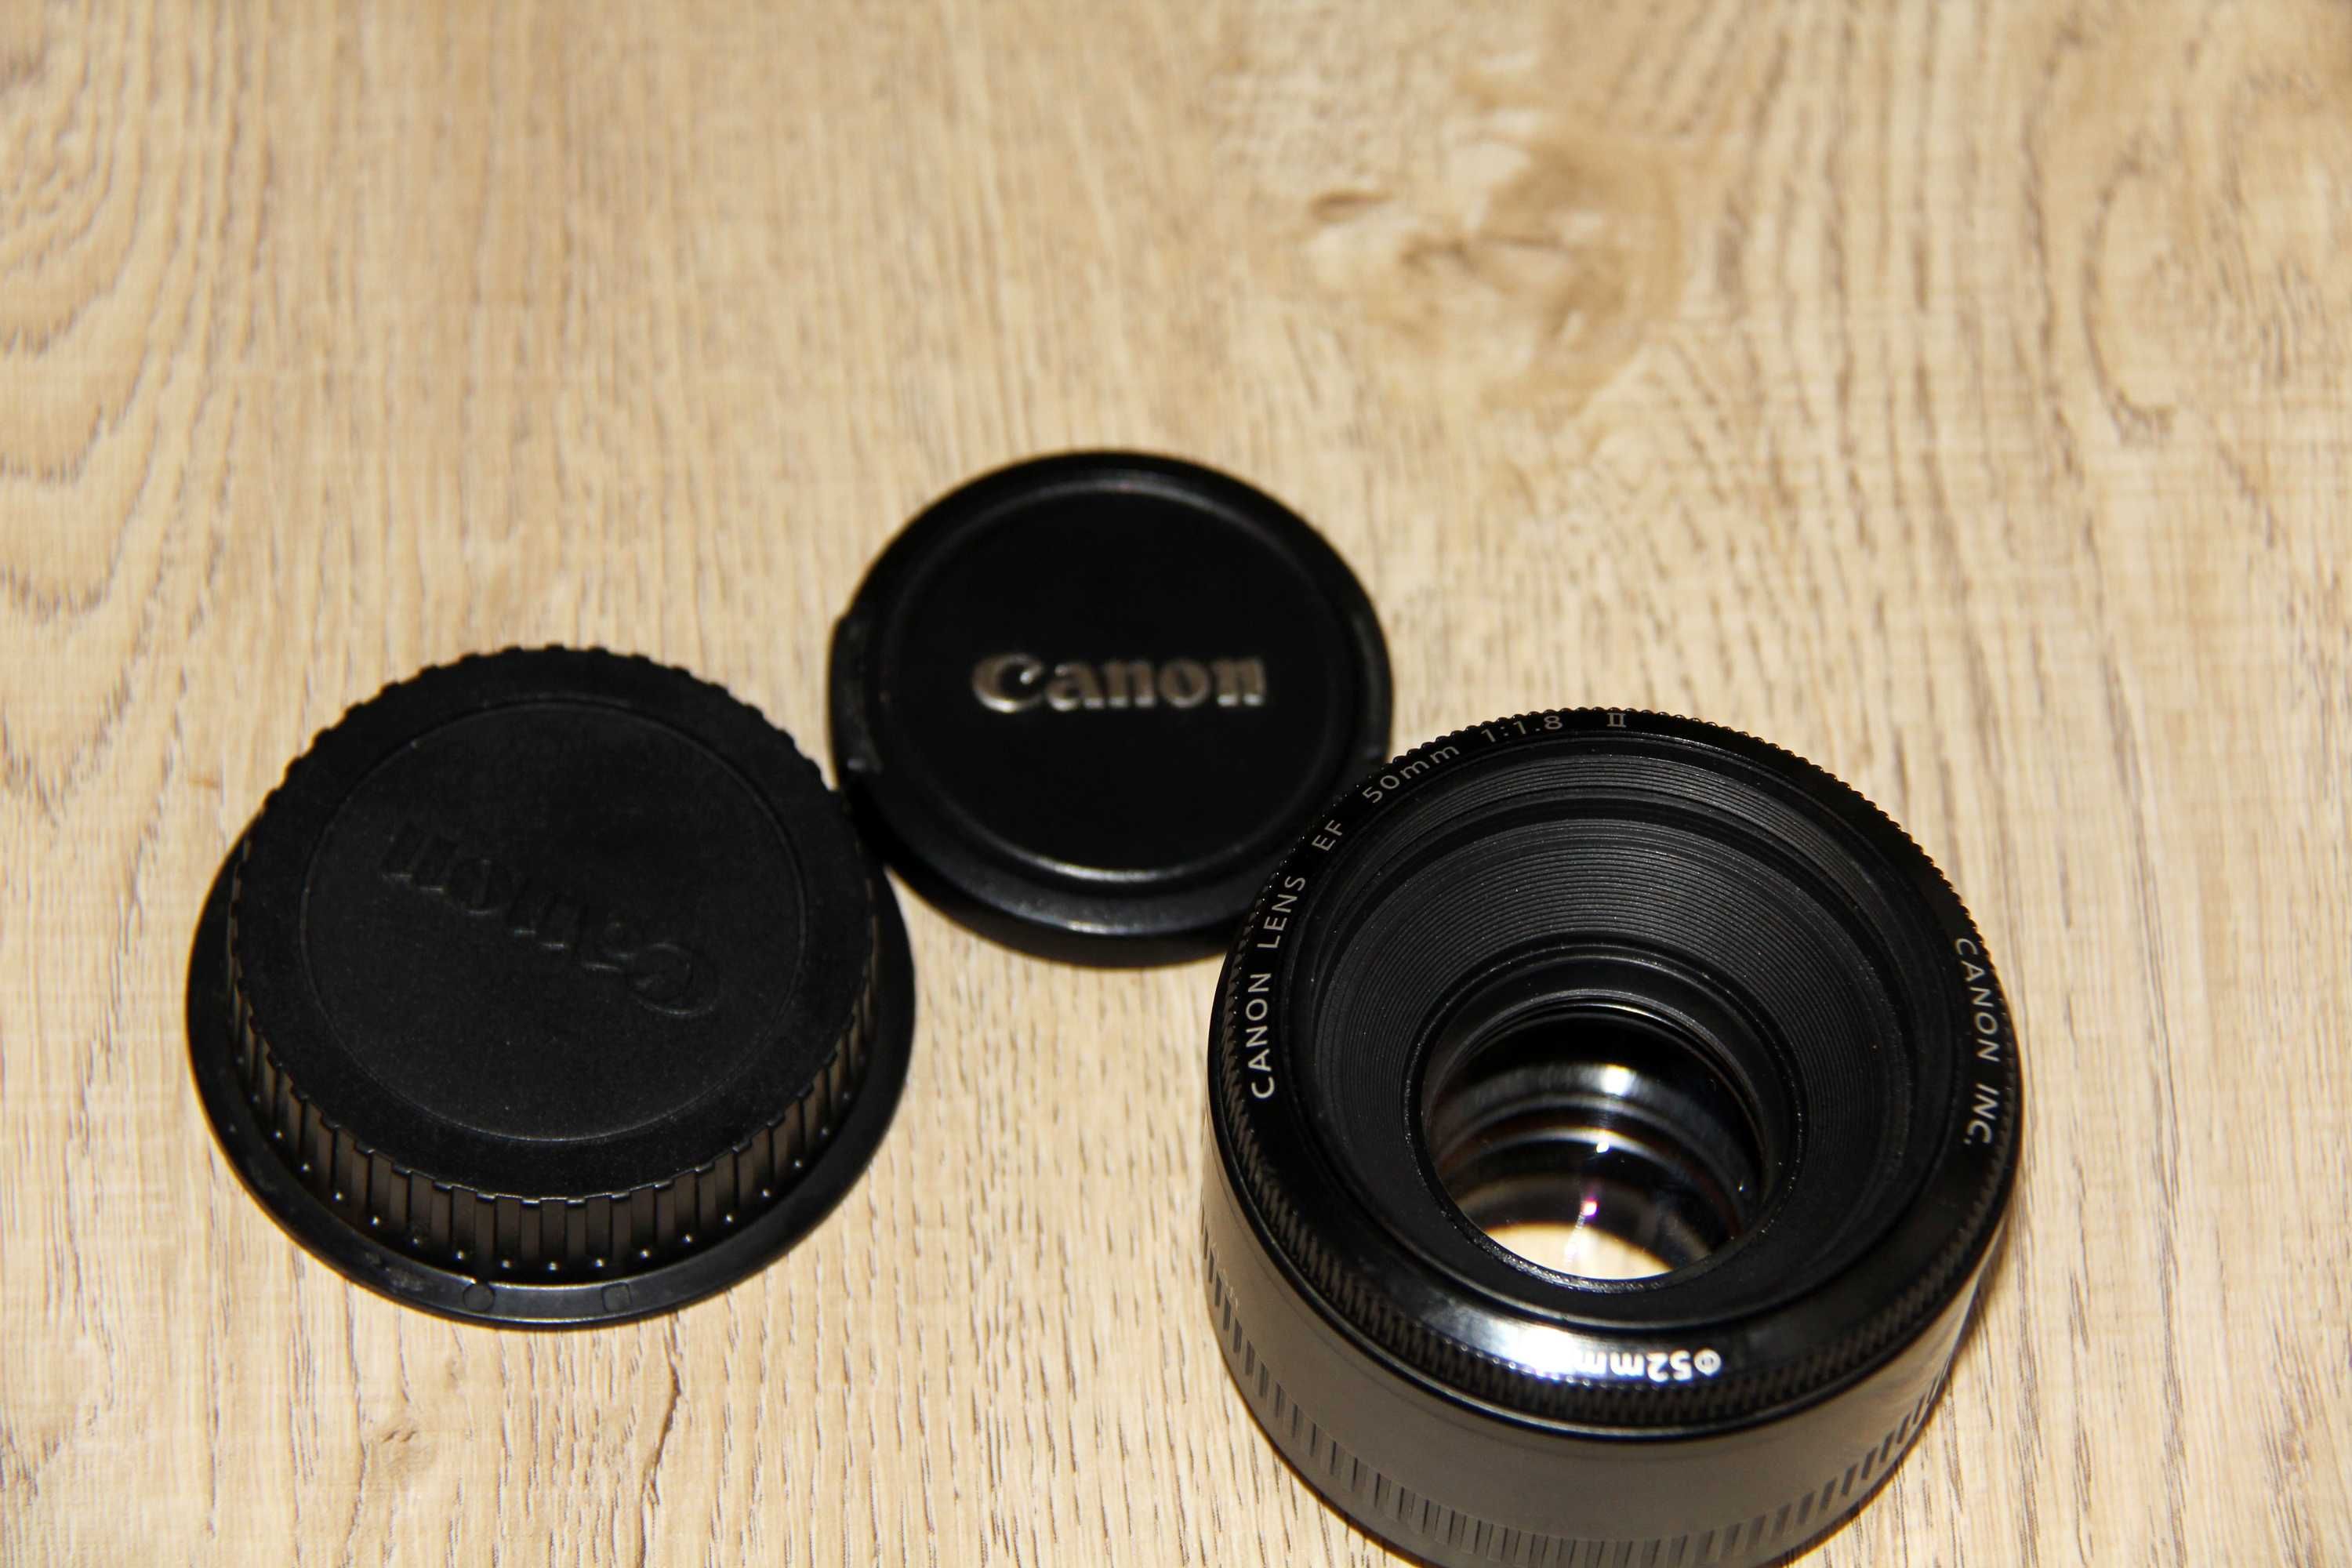 Объектив Canon EF 50mm 1.8 ii. Портретник. Светосильный